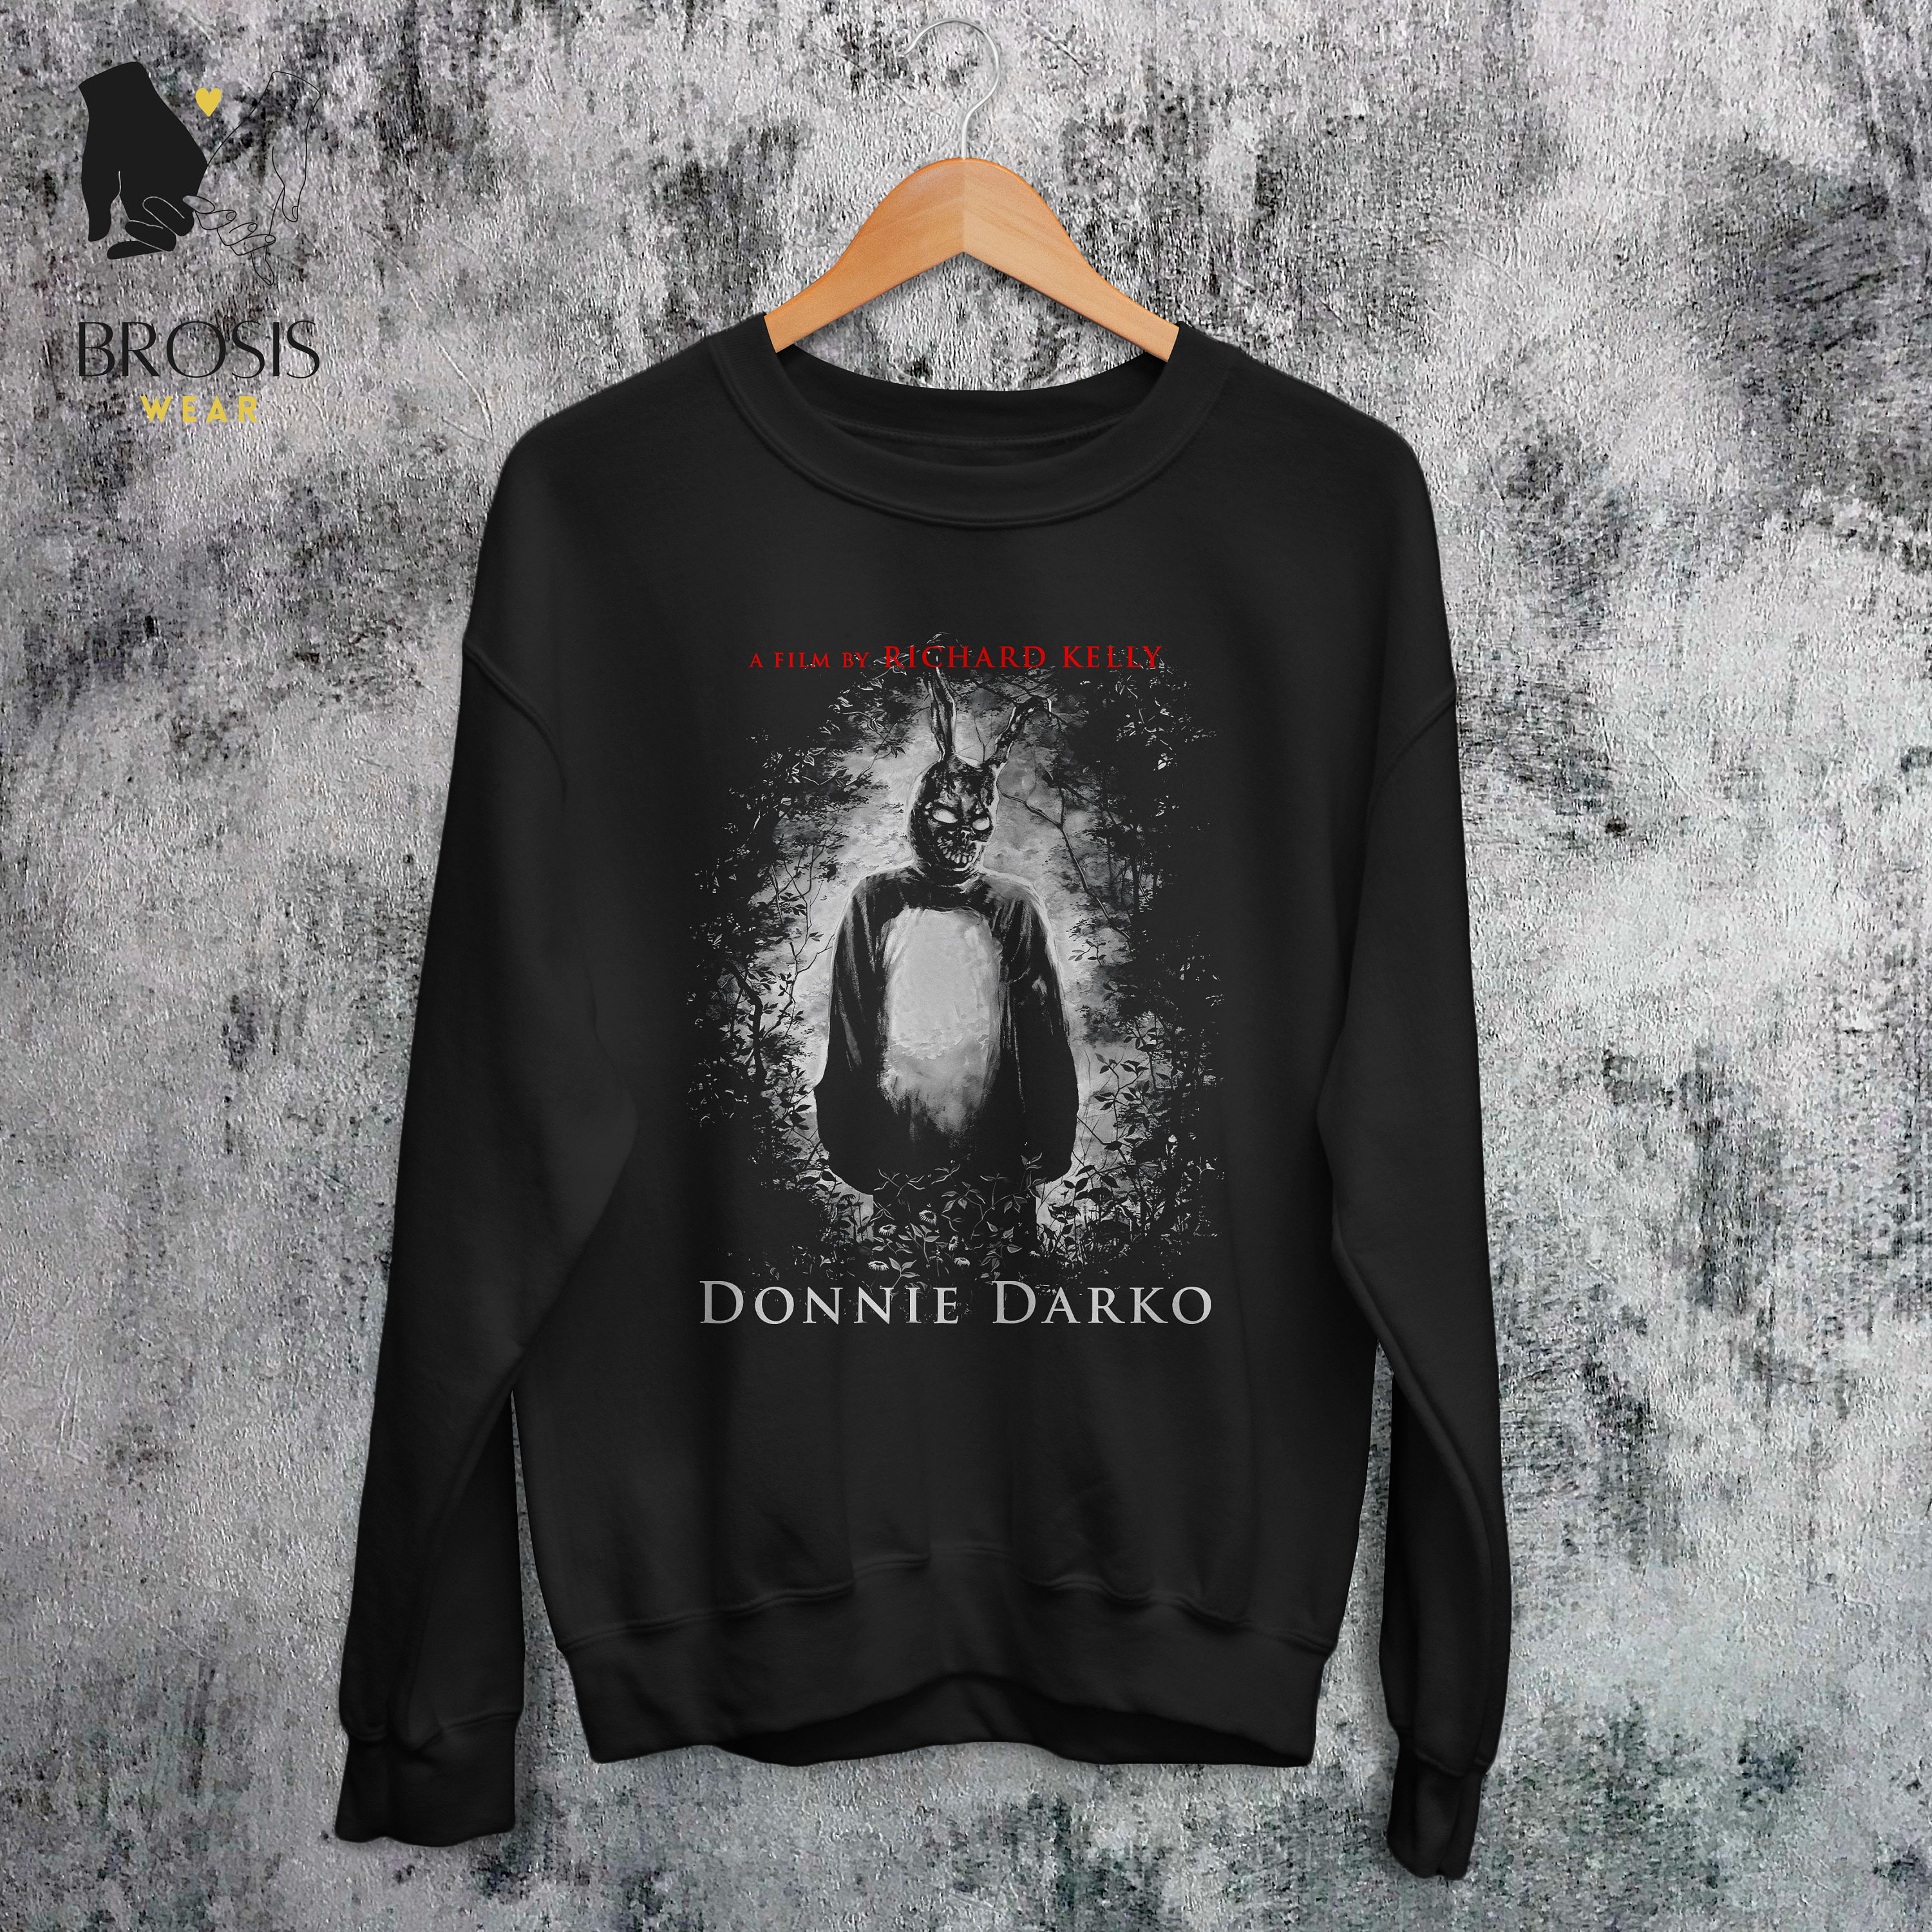 Donnie Darko Sweatshirt Horror Movie Inspired 90's - Etsy UK